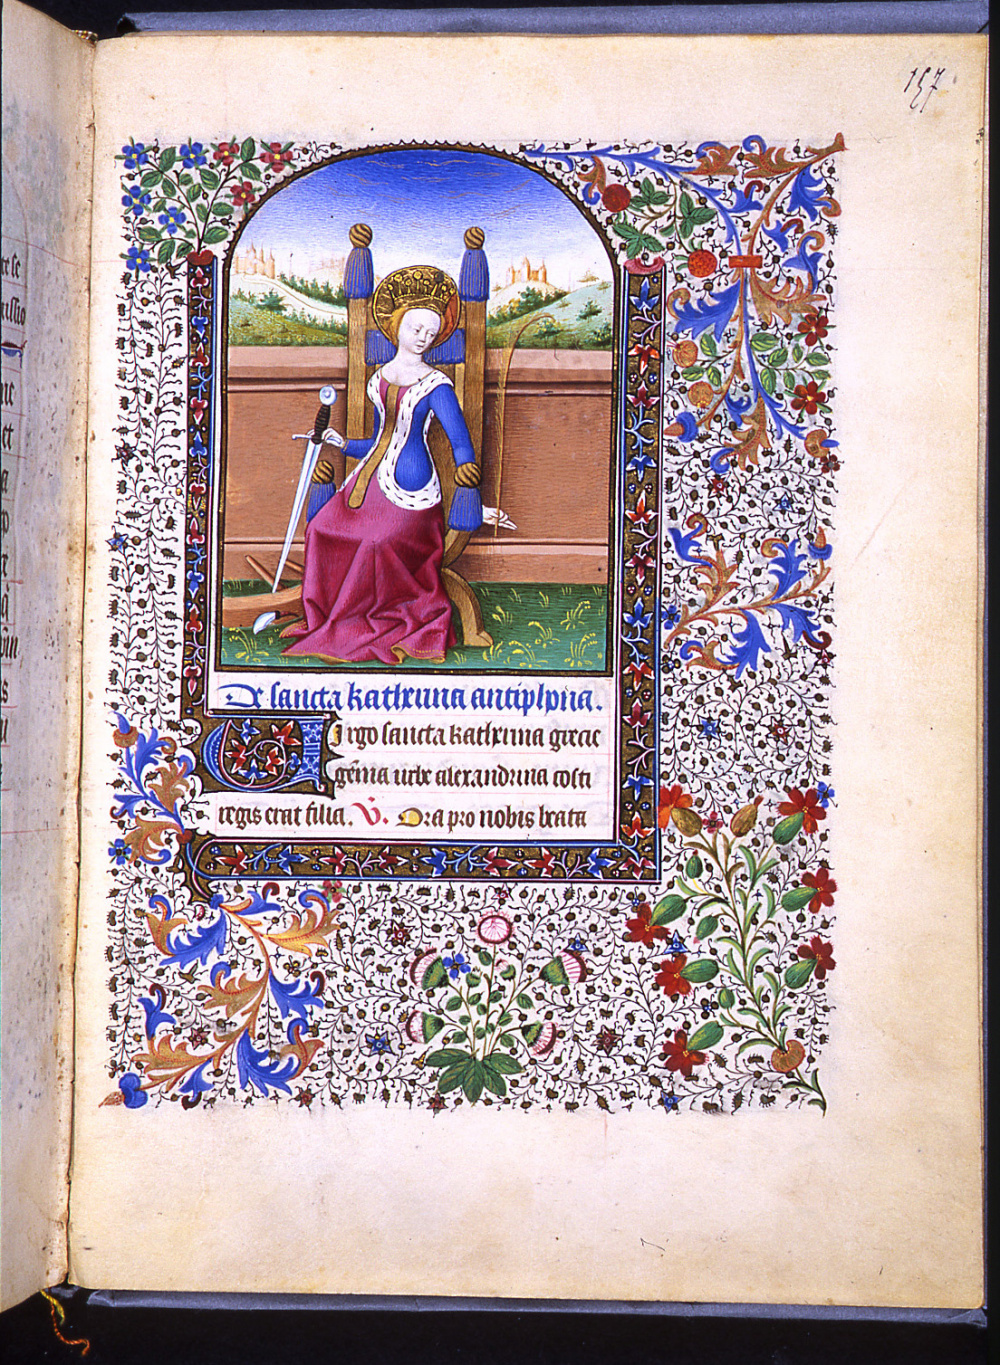 Heures latines à l'usage de Paris (15e siècle) : Sainte Catherine. © Bibliothèque municipale de Grenoble.